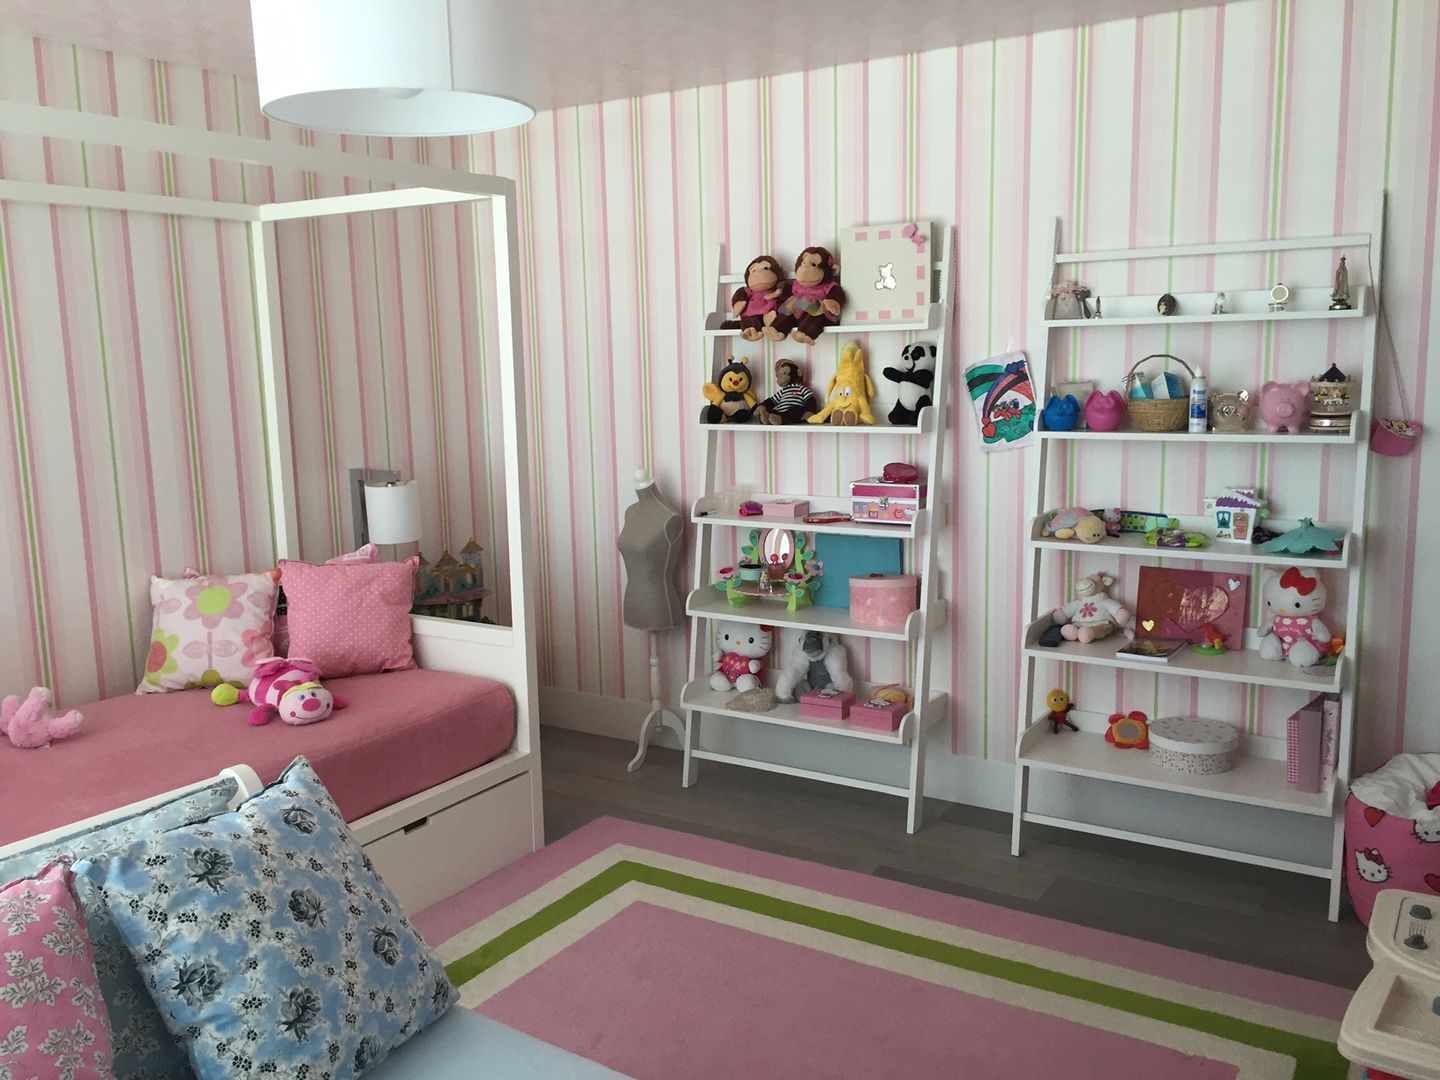 Quarto rosa, verde e azul Margarida Bugarim Interiores Quartos de rapariga quarto,decoração,quartorapariga,tapete,cama,rosa,verde,